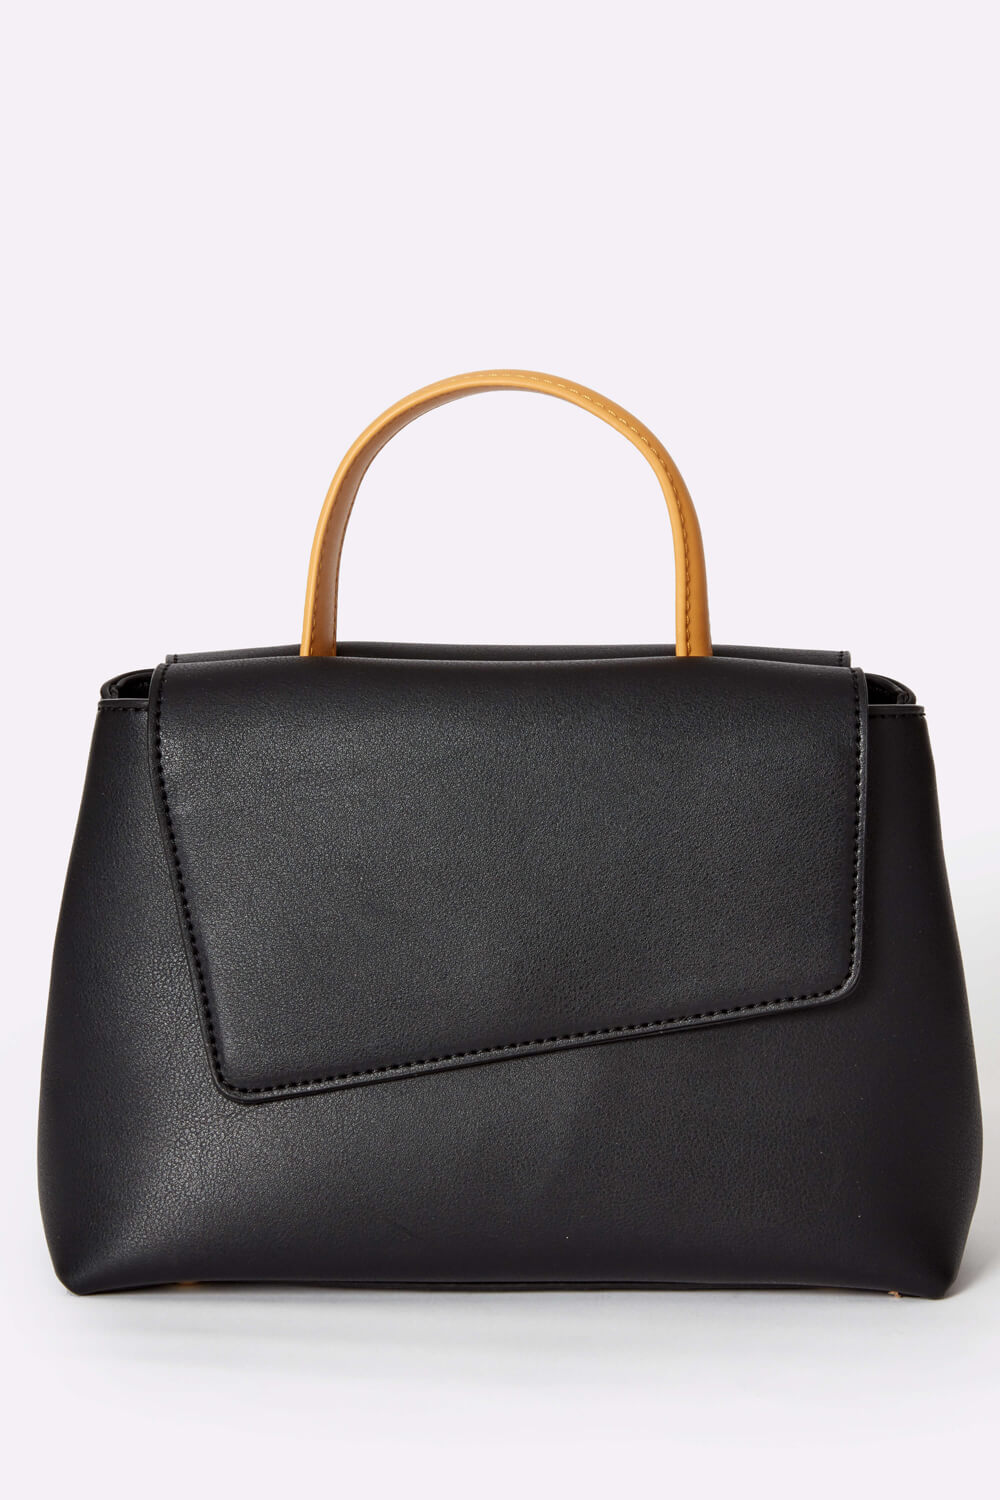 Mini Shoulder Handbag in Black - Roman Originals UK